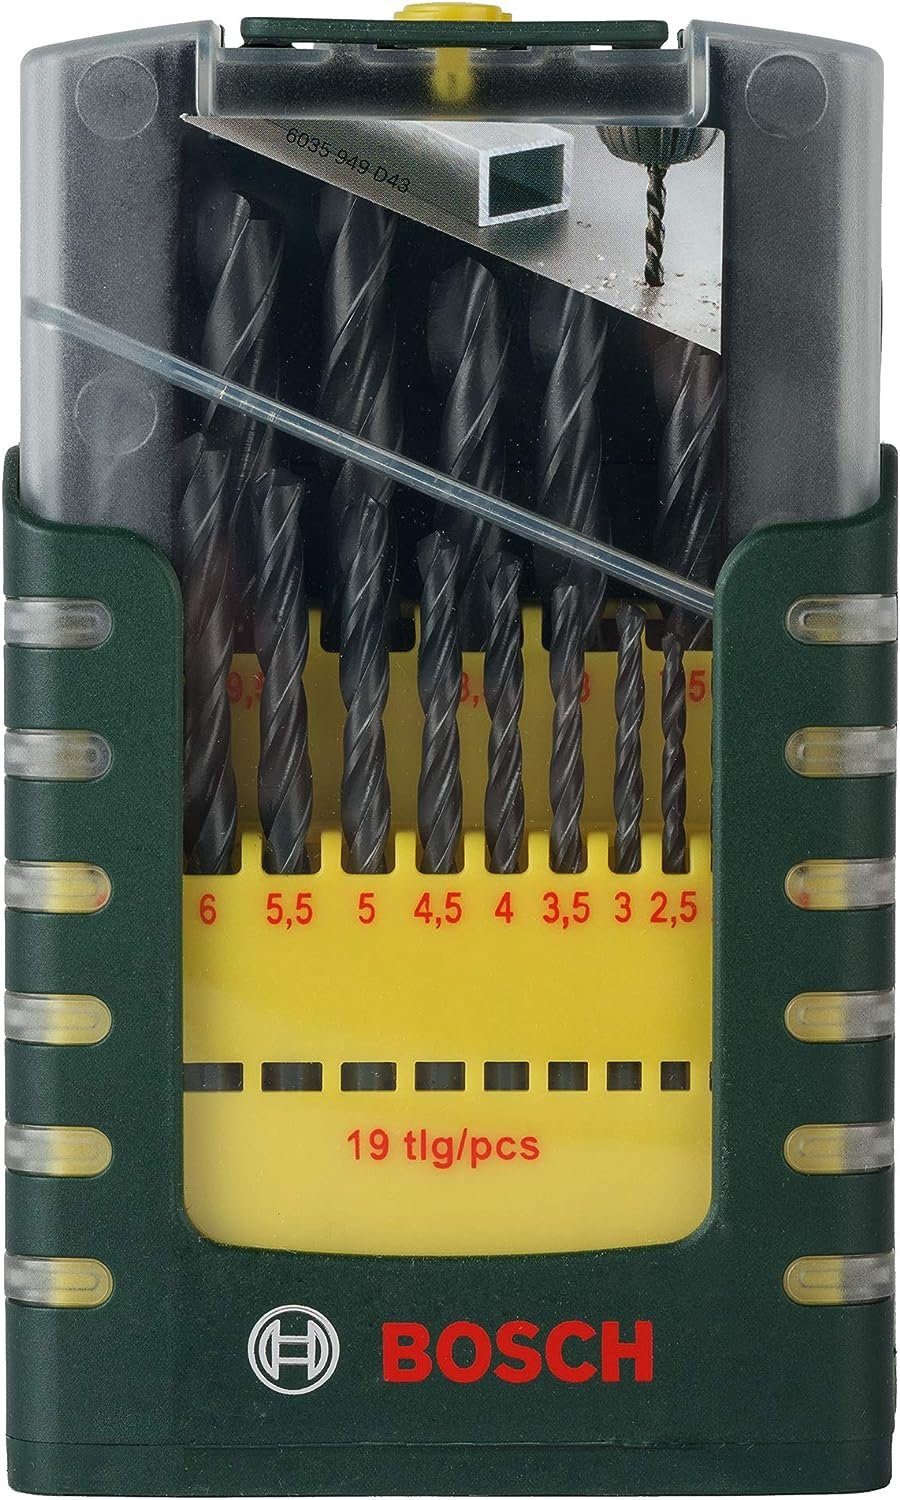 BOSCH mm, - 19-tlg., Bosch Metallbohrer-Set und Bohrer- 1 Gripbox Bitset 10 HSS-R,